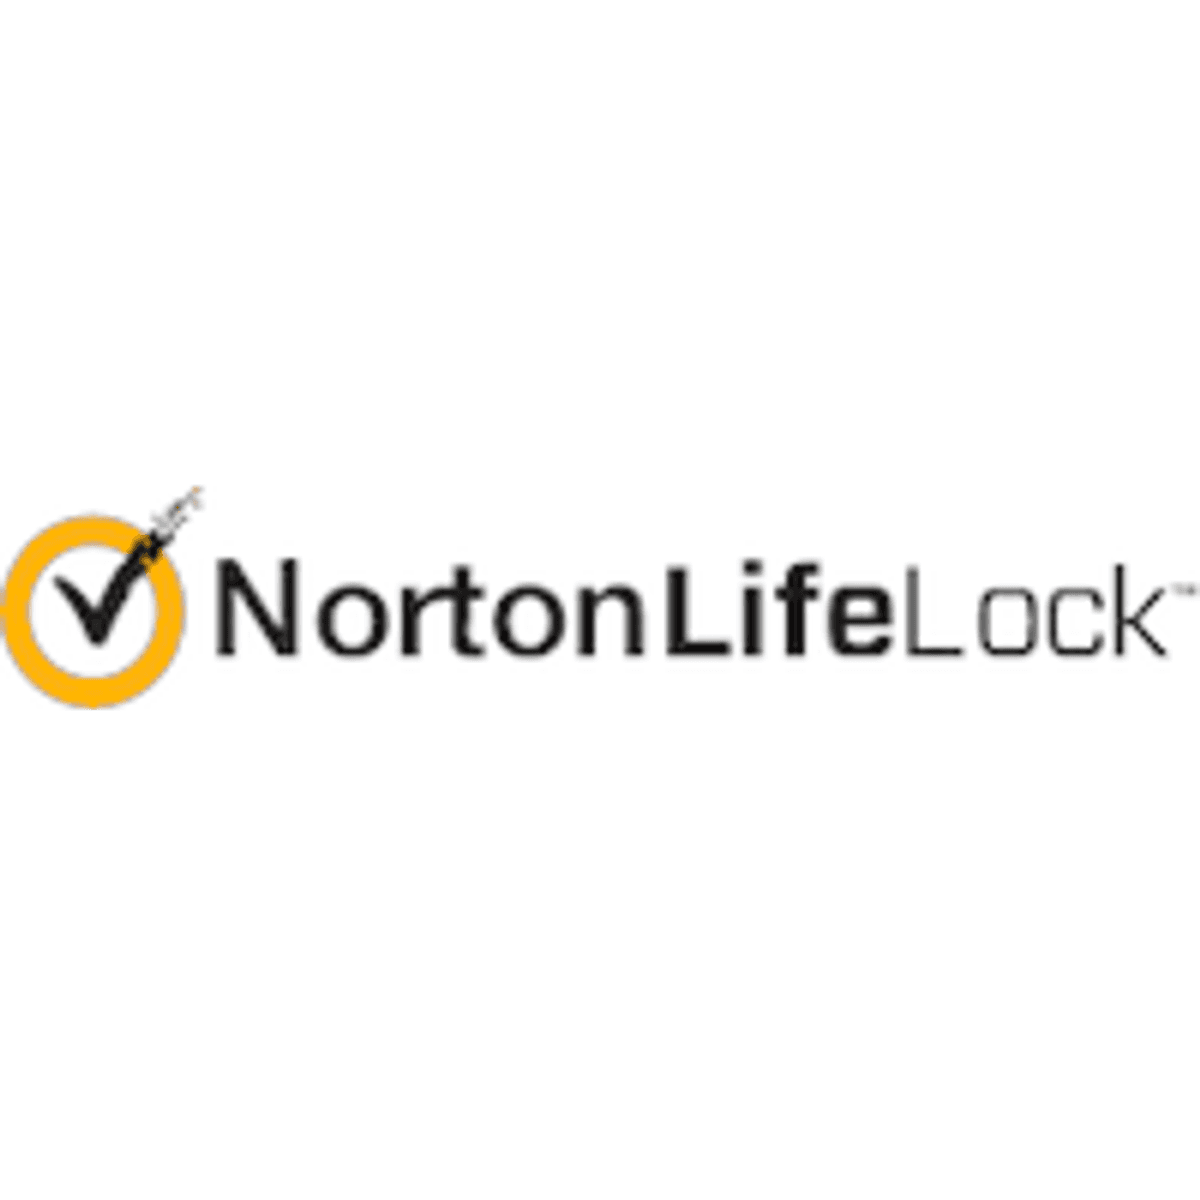 Vincent Pilette benoemd tot CEO van NortonLifeLock image